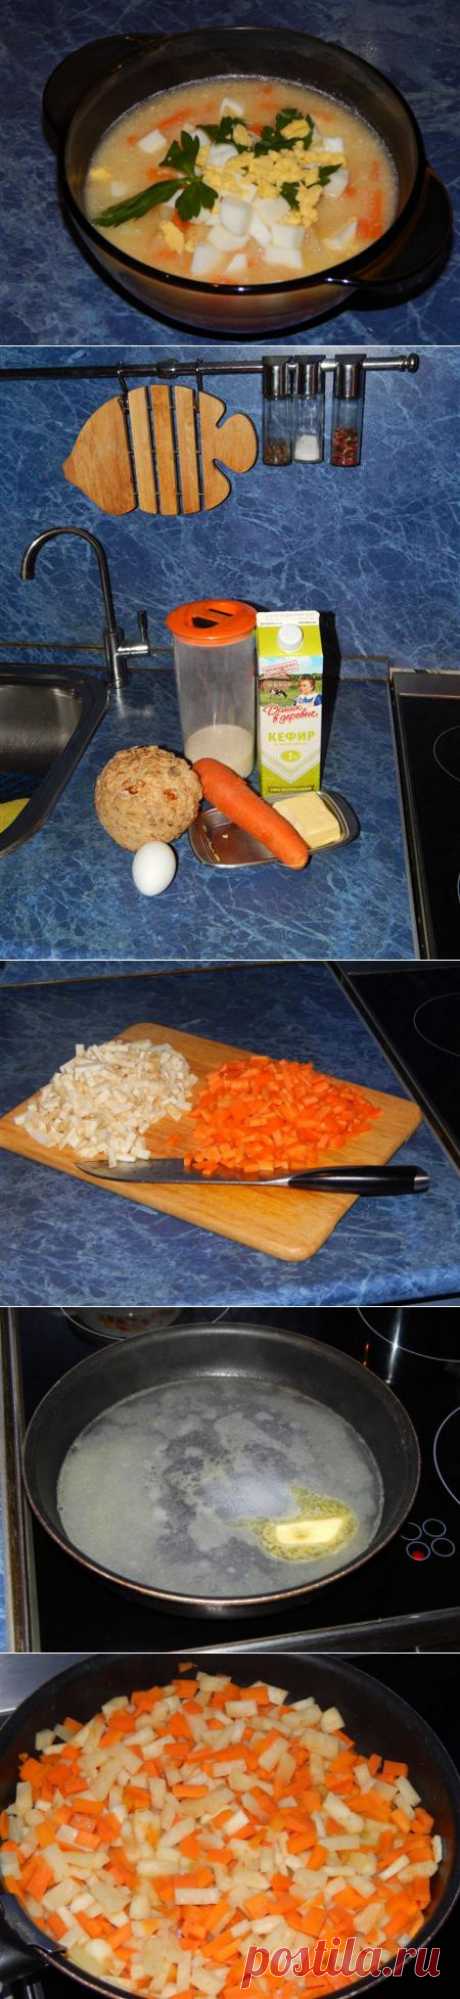 Диета №5 - Суп из сельдерея и моркови | Давай поговорим